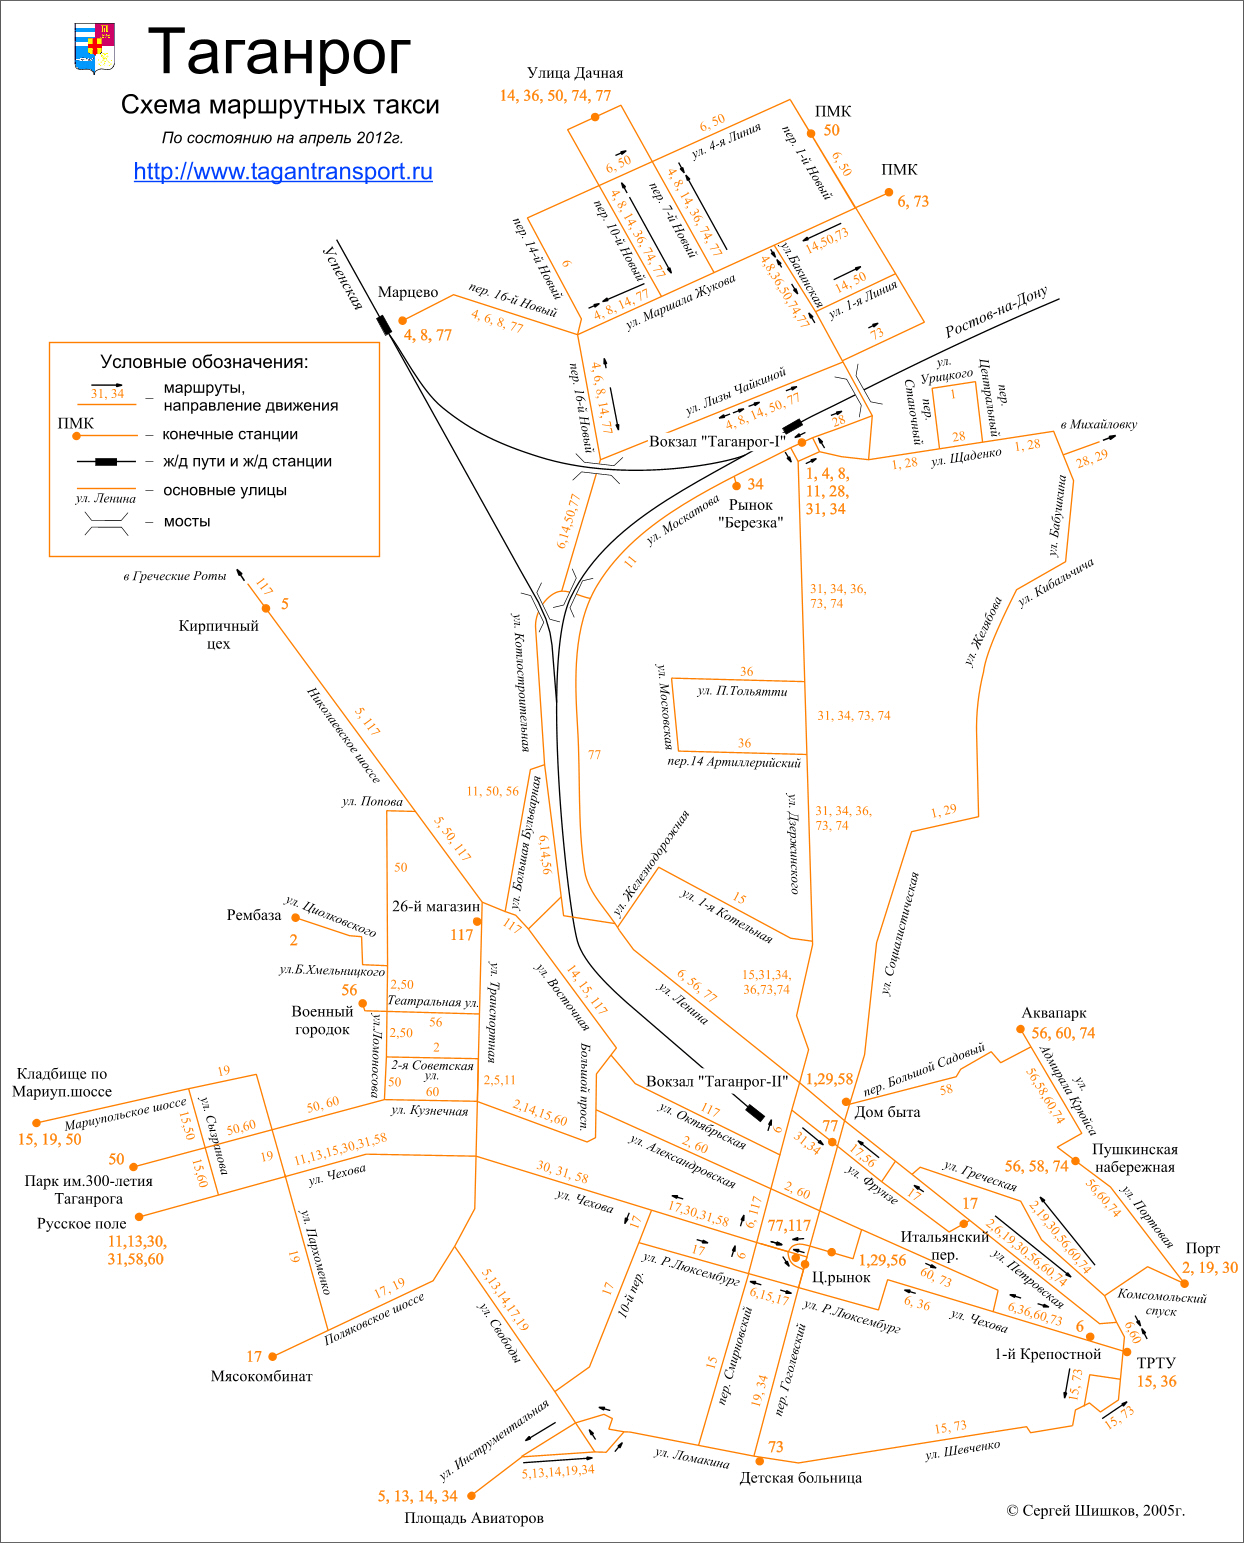 Таганрог. Схема маршрутных такси Таганрога по состоянию на апрель 2012 года